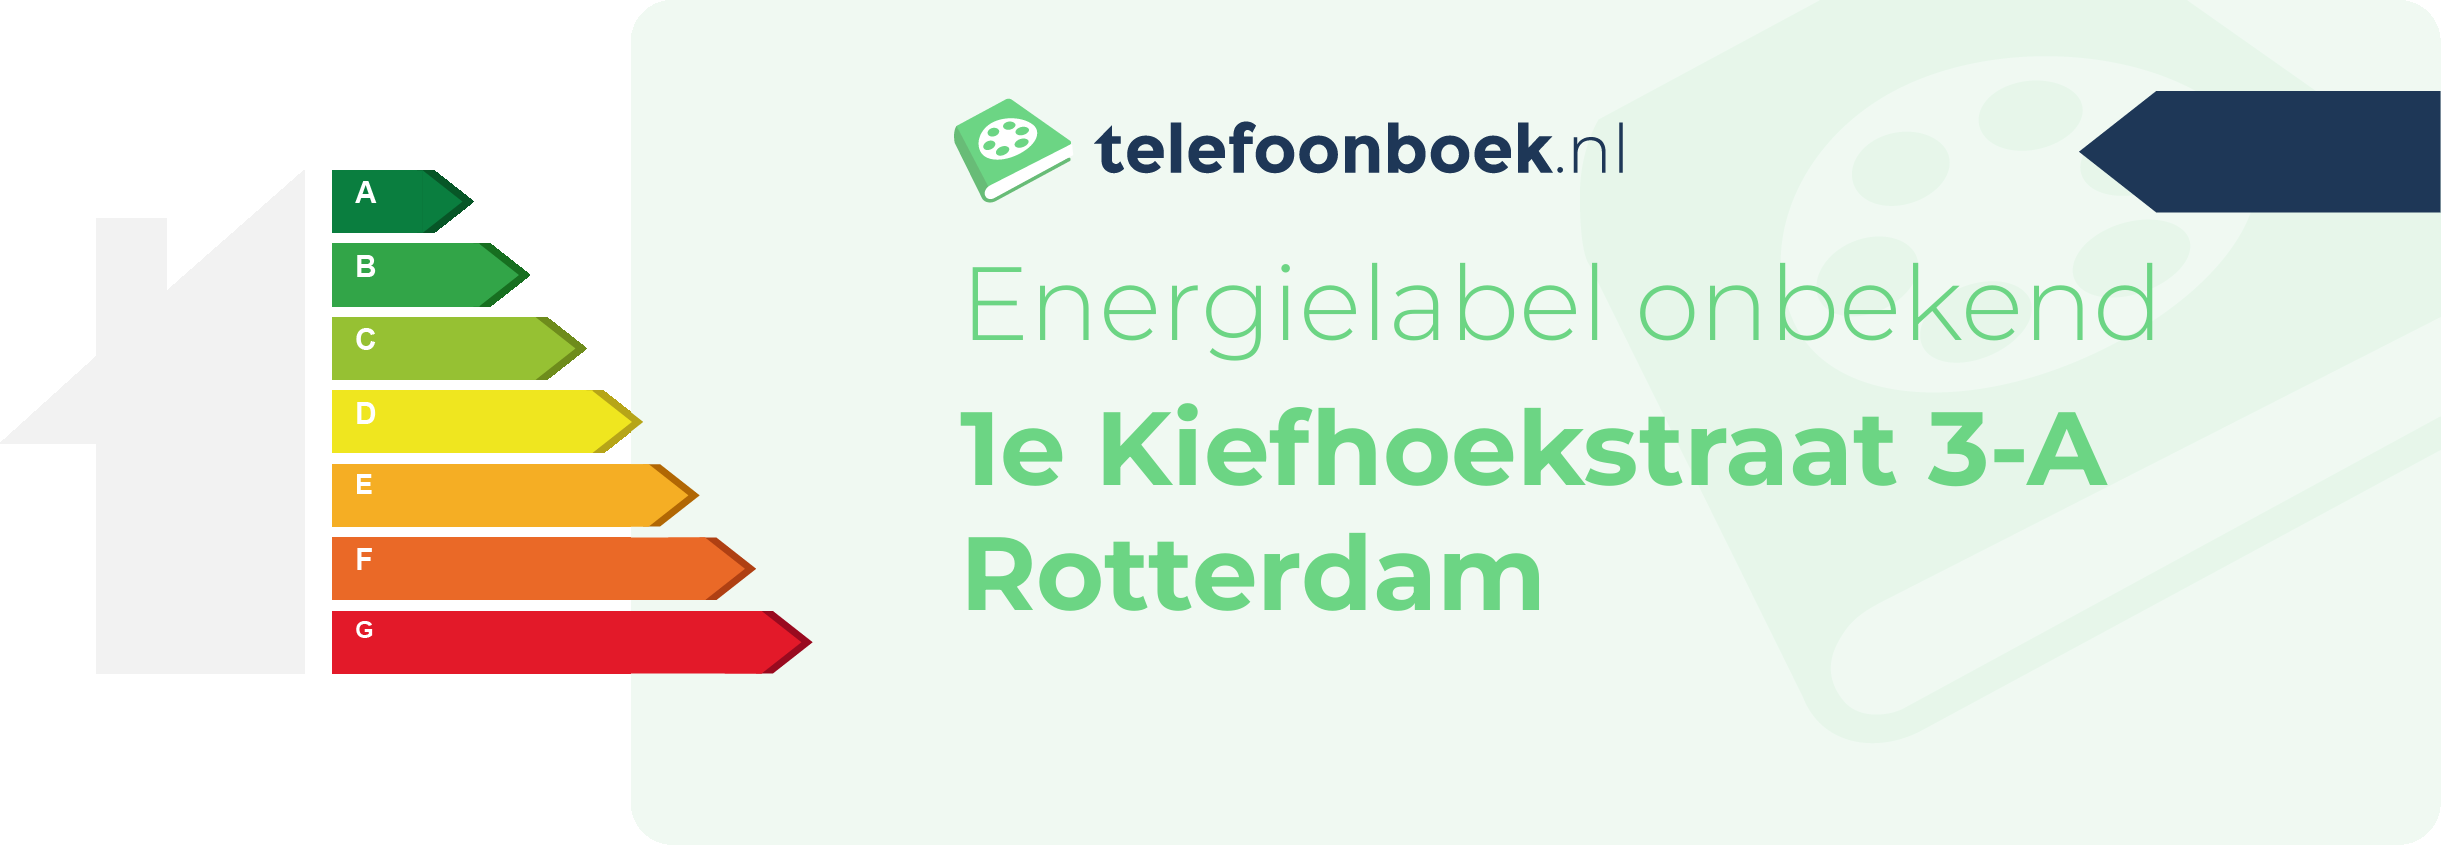 Energielabel 1e Kiefhoekstraat 3-A Rotterdam